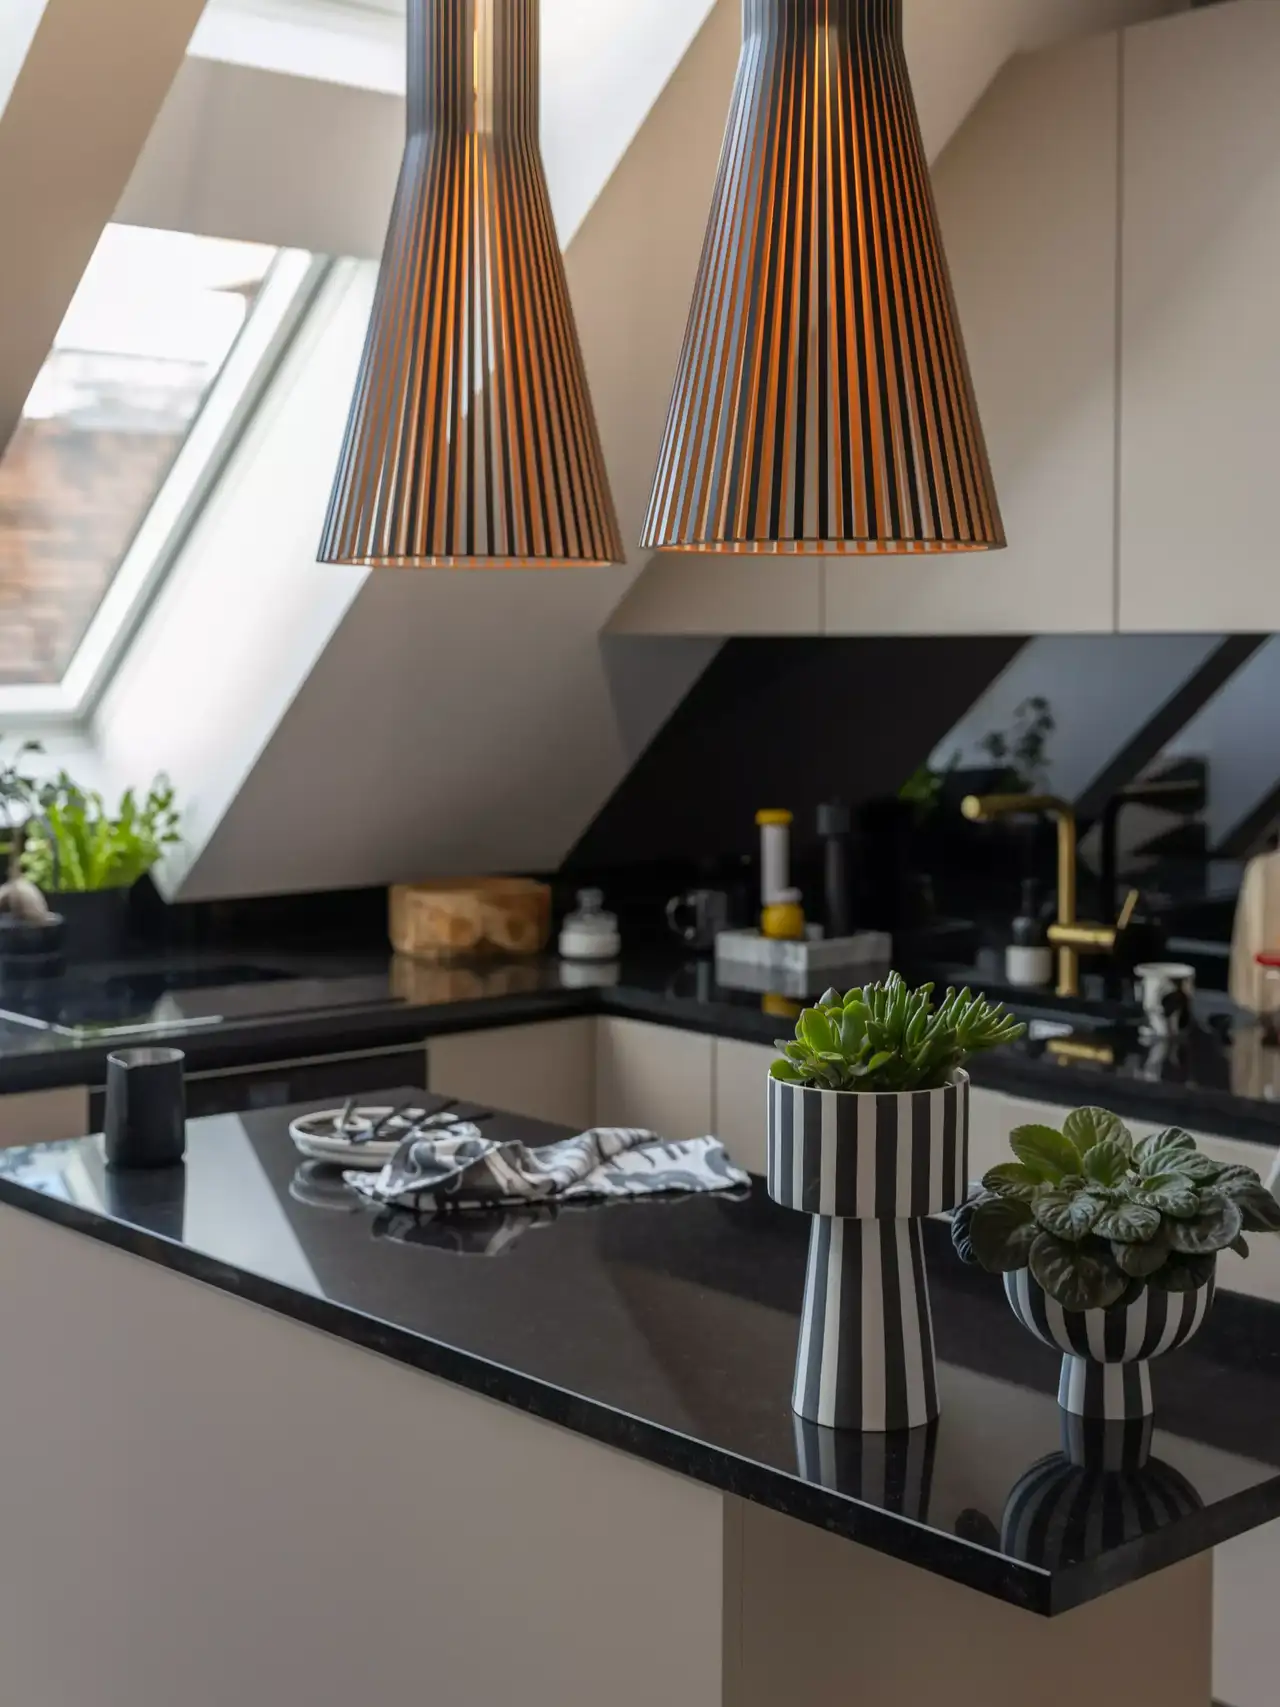 Stilvolle moderne Küche mit gestreiften Pendelleuchten und VELUX Dachflächenfenster.